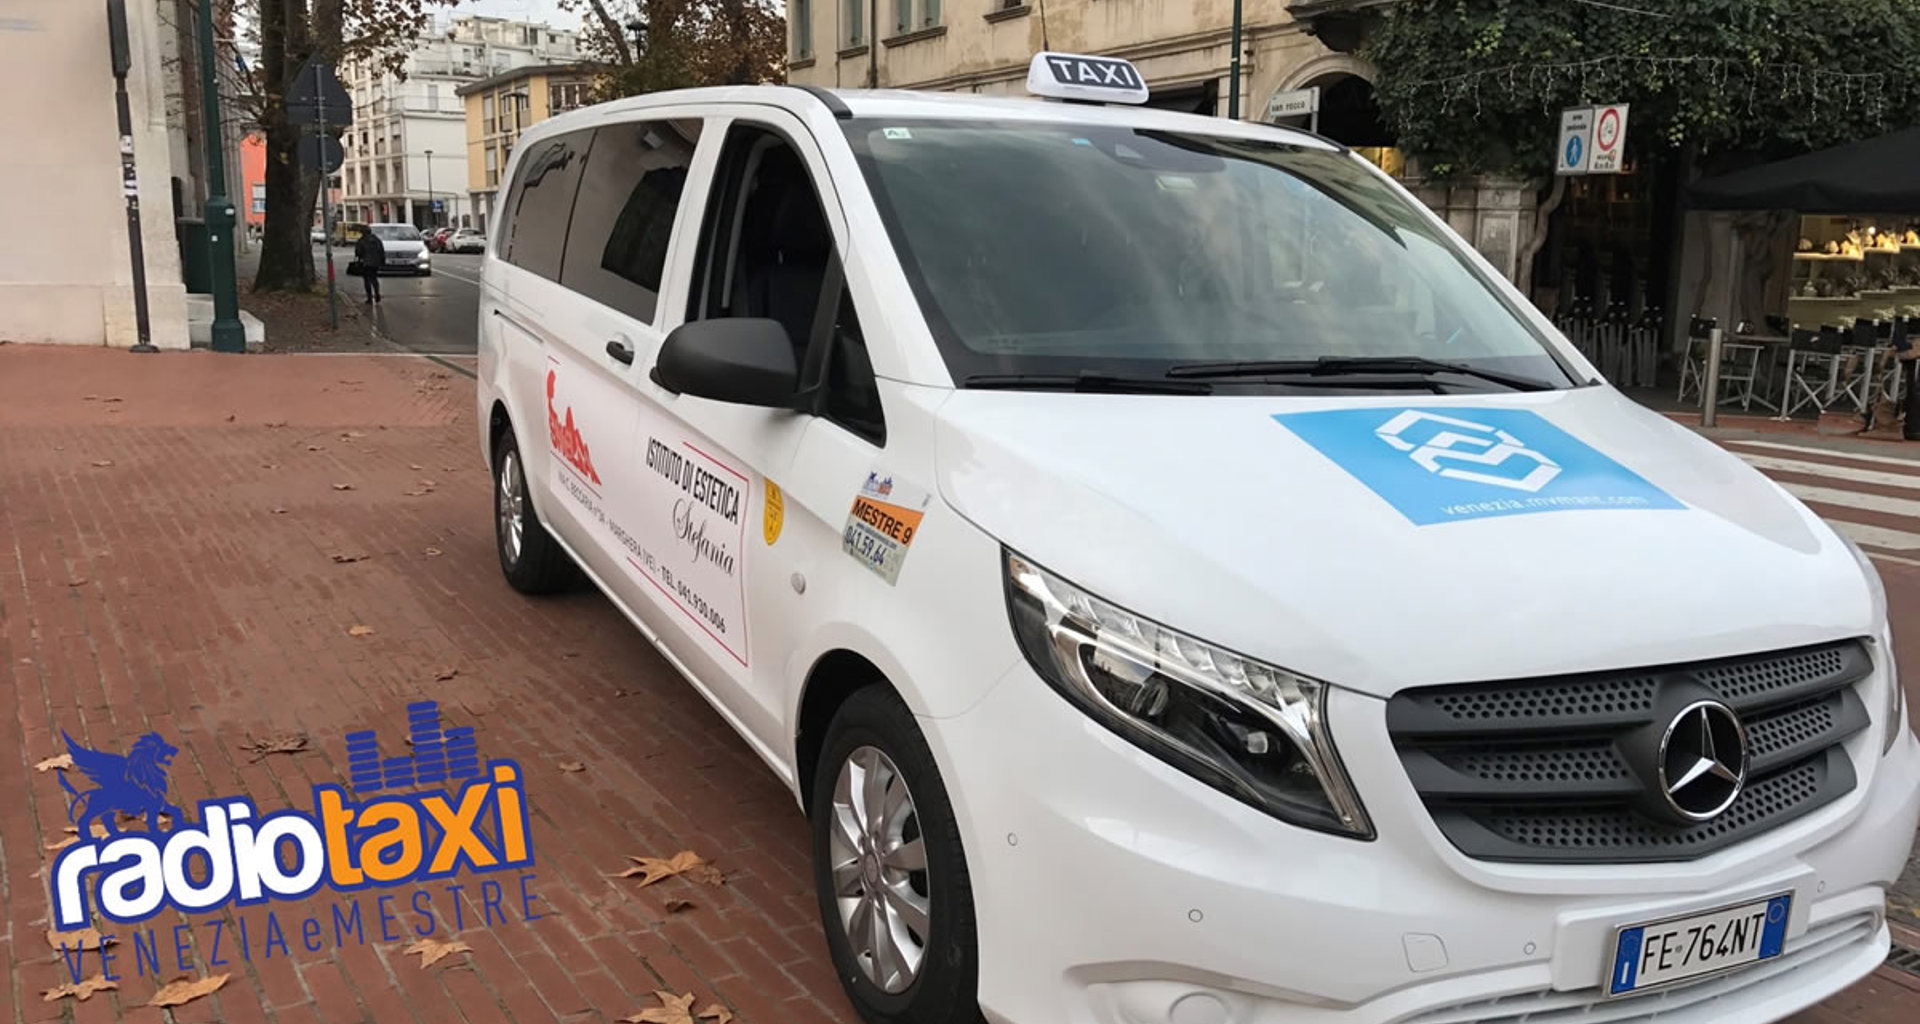 Immagine Taxi Sharing Innovazione possibile